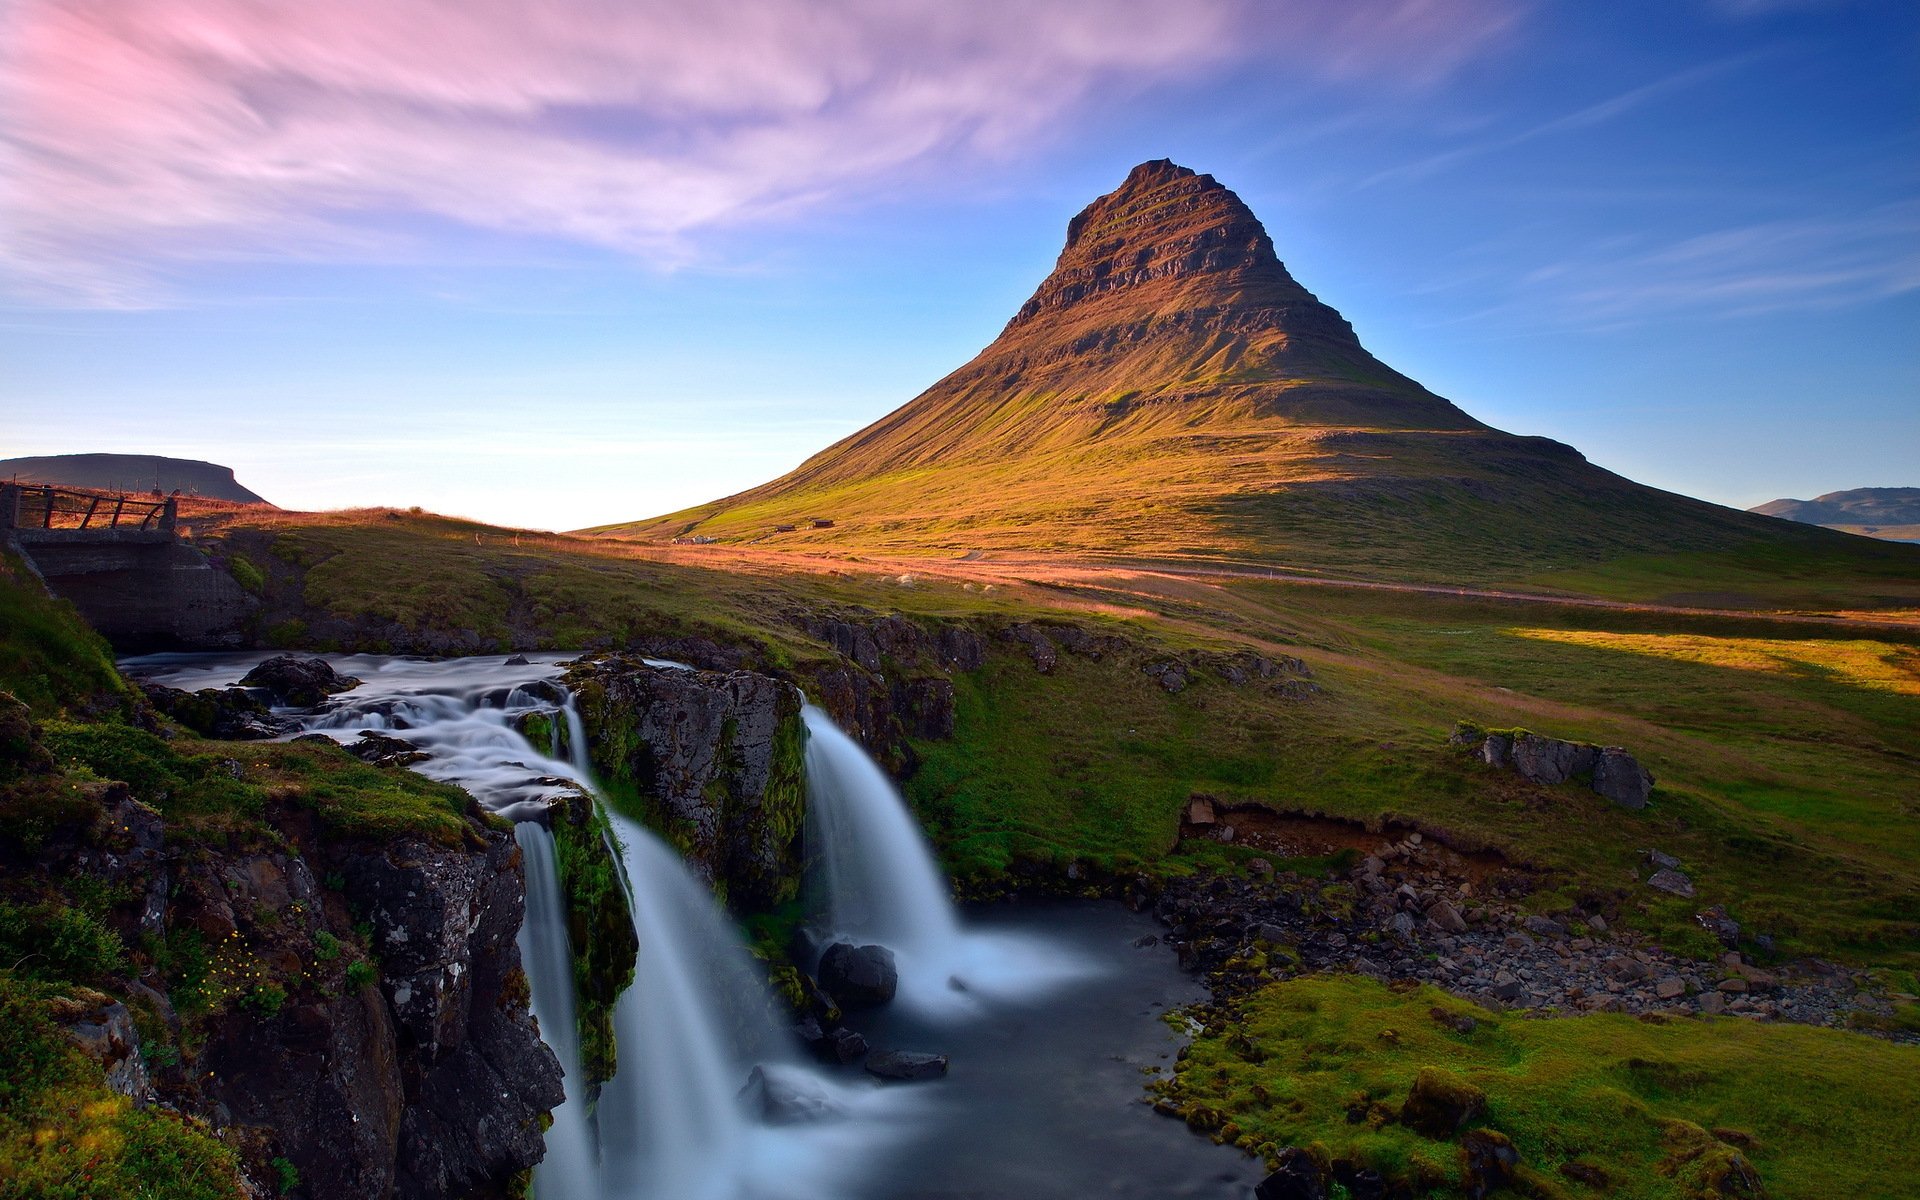 Nếu bạn muốn có một không gian lên trên như kiểu phim ảnh, thì hình nền Kirkjufell HD sẽ là lựa chọn hoàn hảo cho bạn. Với sự kết hợp tuyệt vời của những quả núi cùng với vẻ đẹp hoang sơ của Iceland, bạn sẽ tìm thấy một không gian hoàn hảo cho riêng mình. Hãy tận hưởng và trải nghiệm tuyệt vời khi xem hình nền Kirkjufell HD.